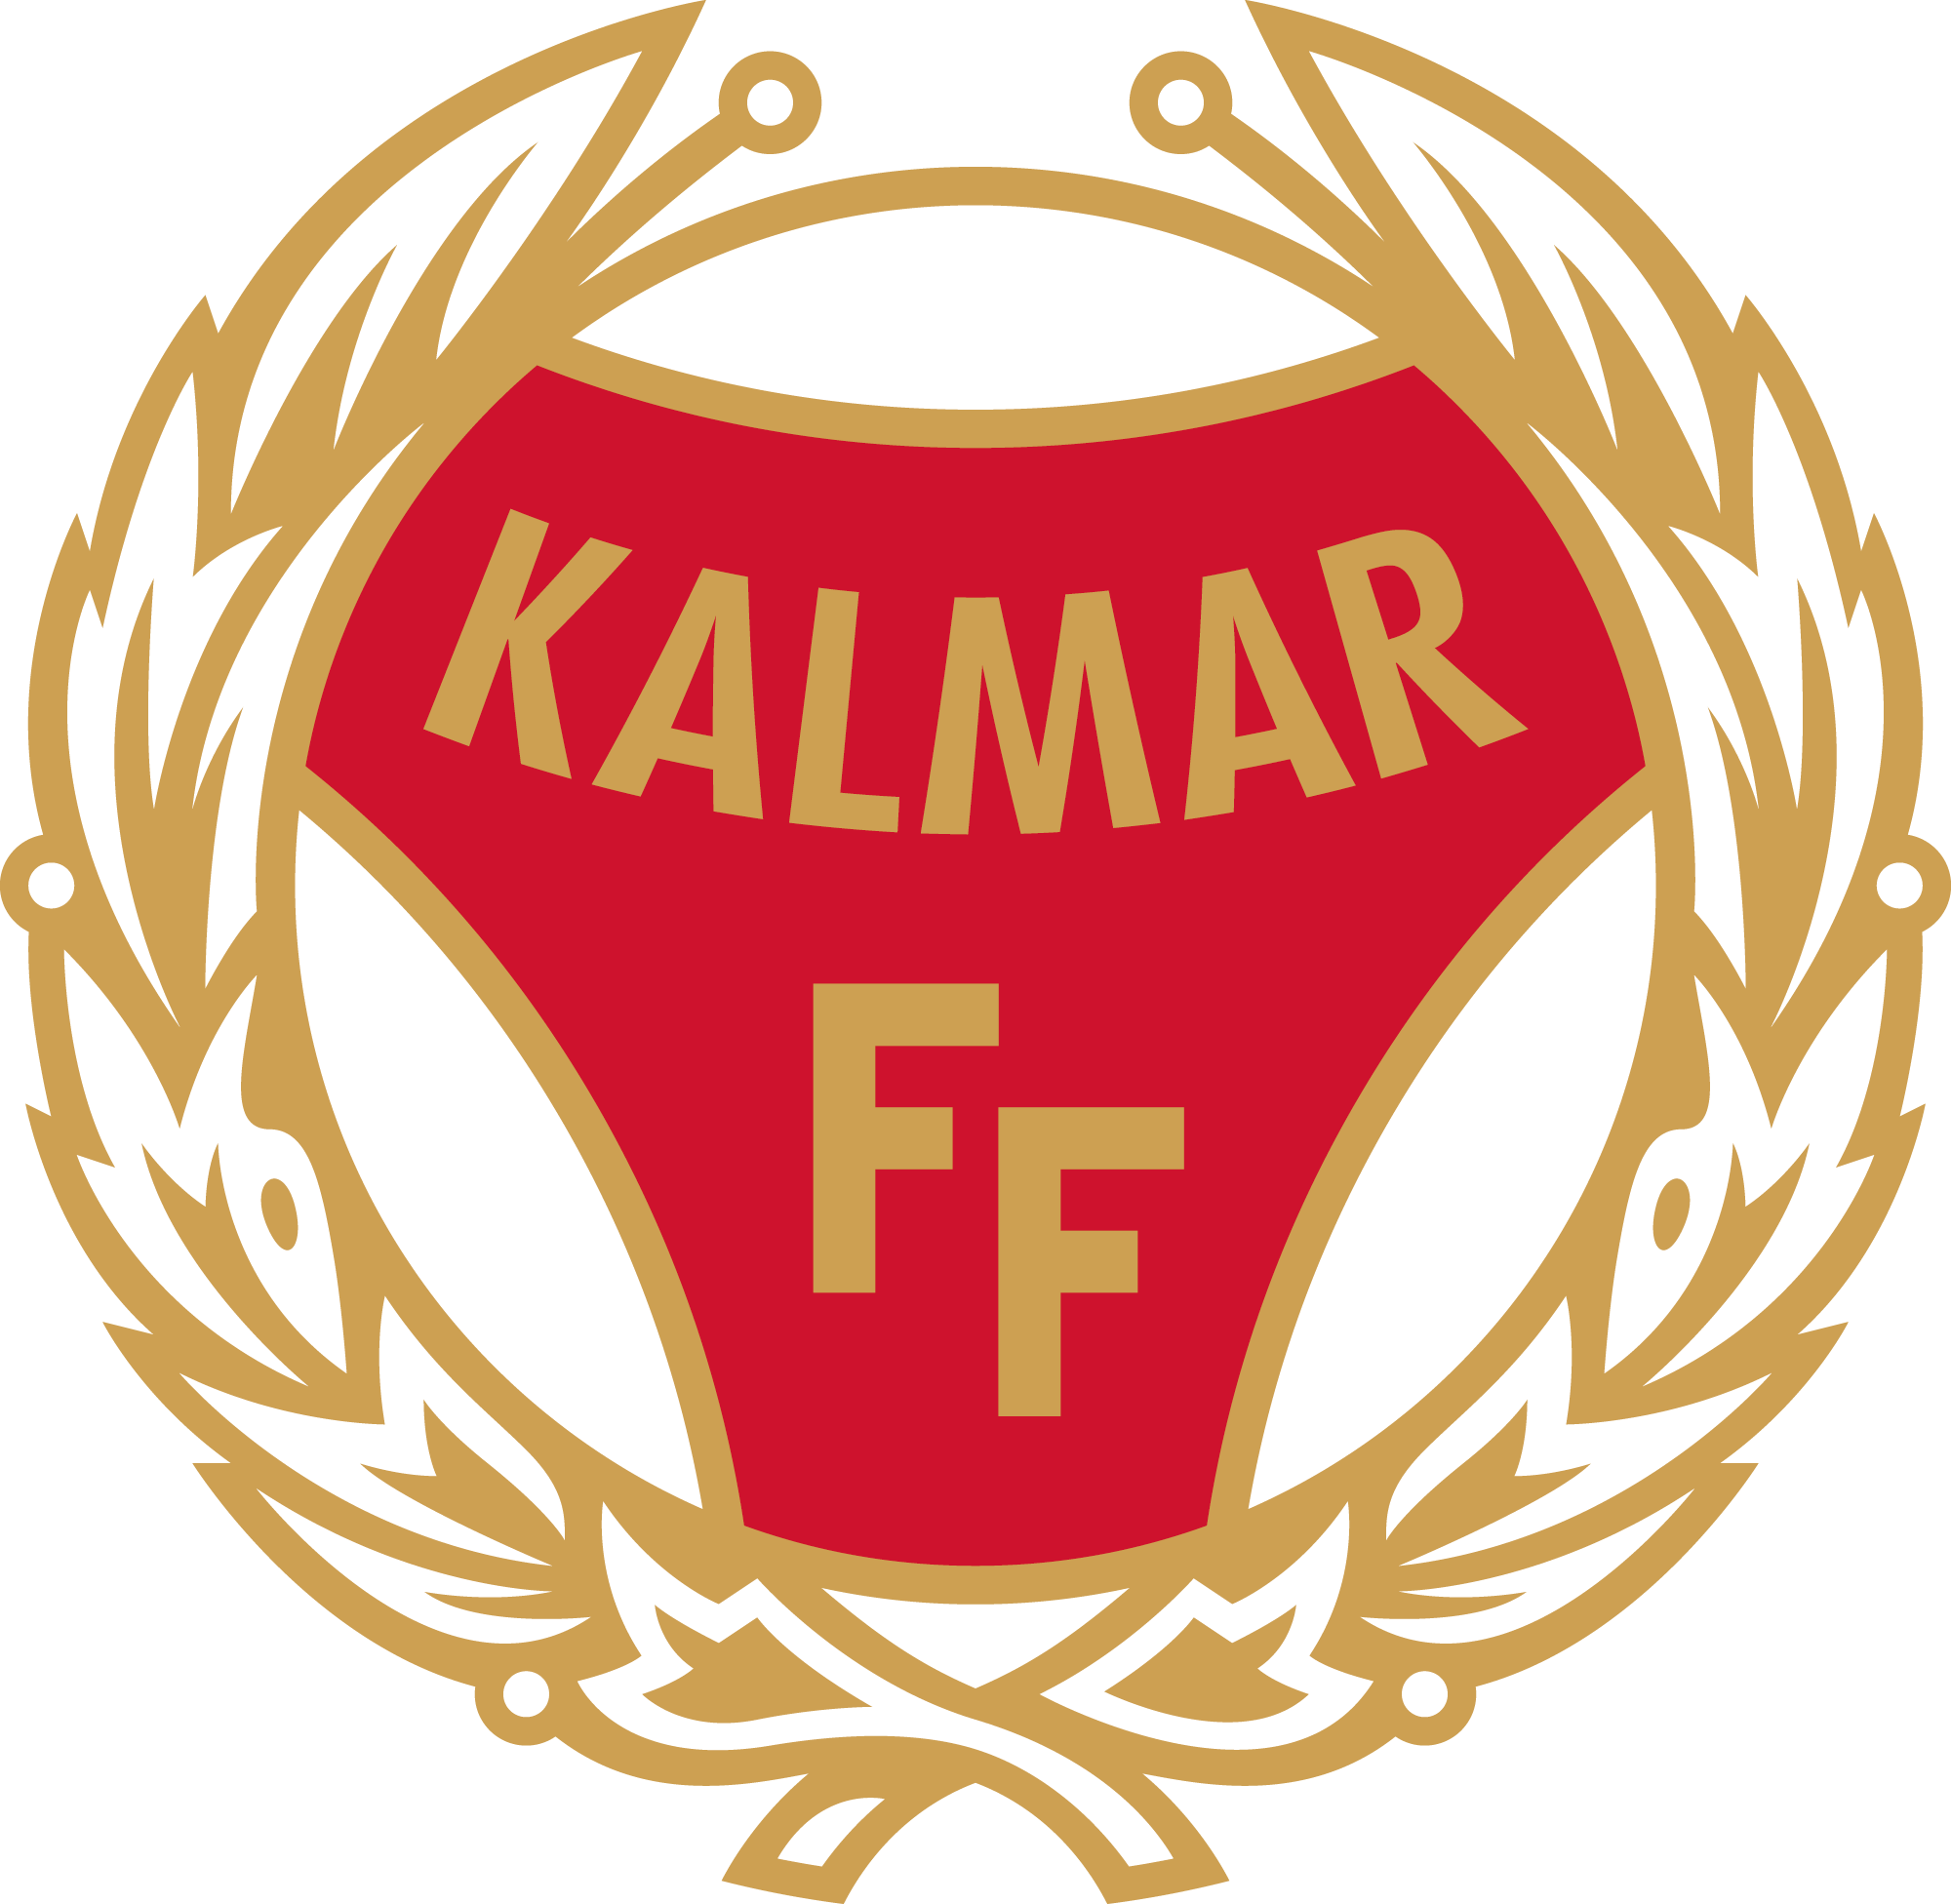 Kalmar FF emblem